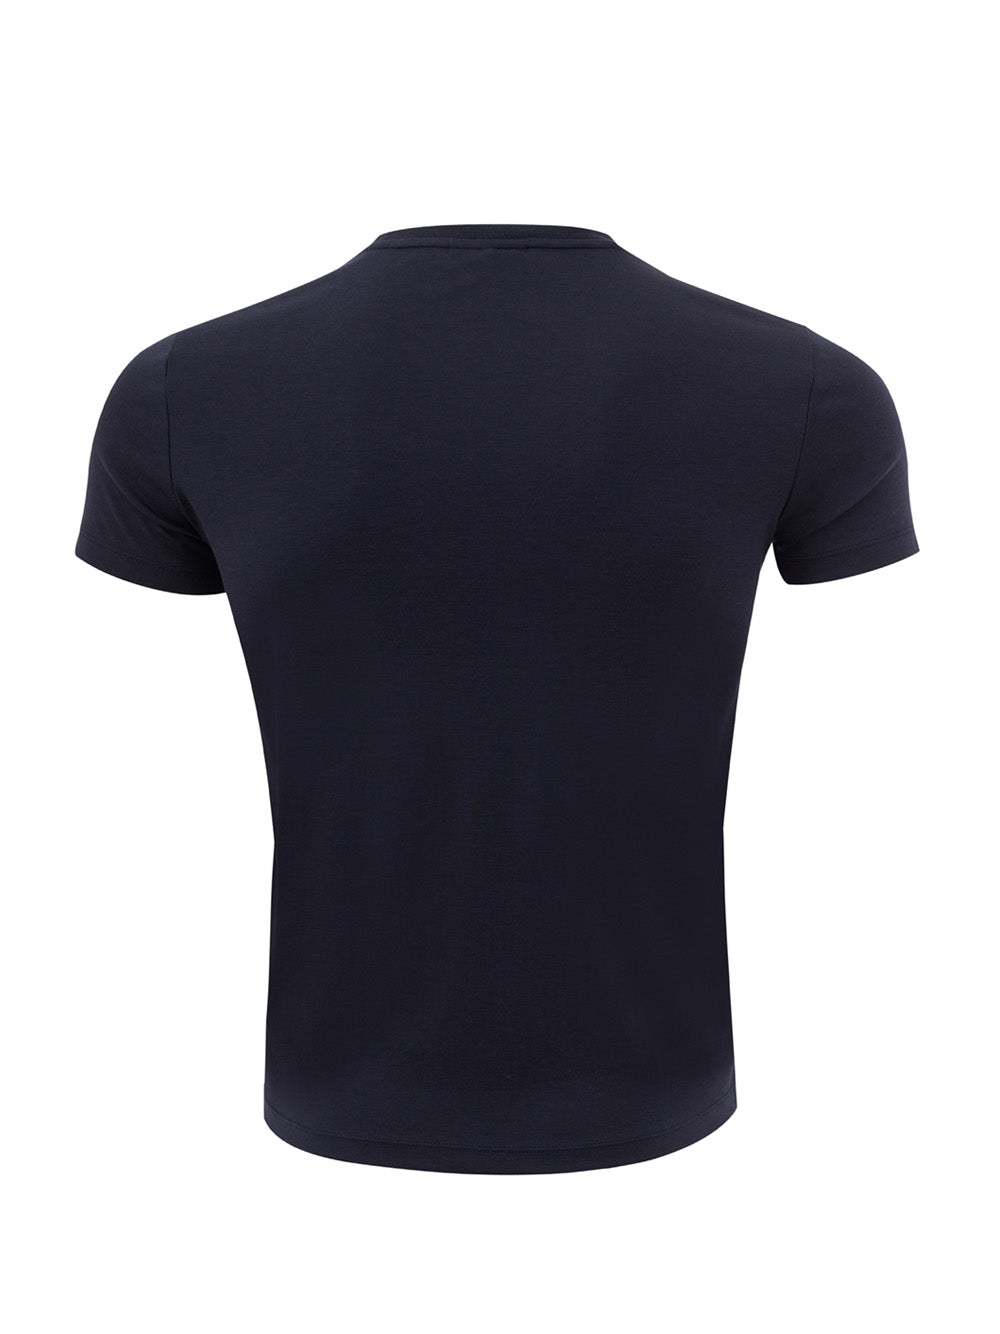 Emporio Armani T-Shirt in stretch cotton